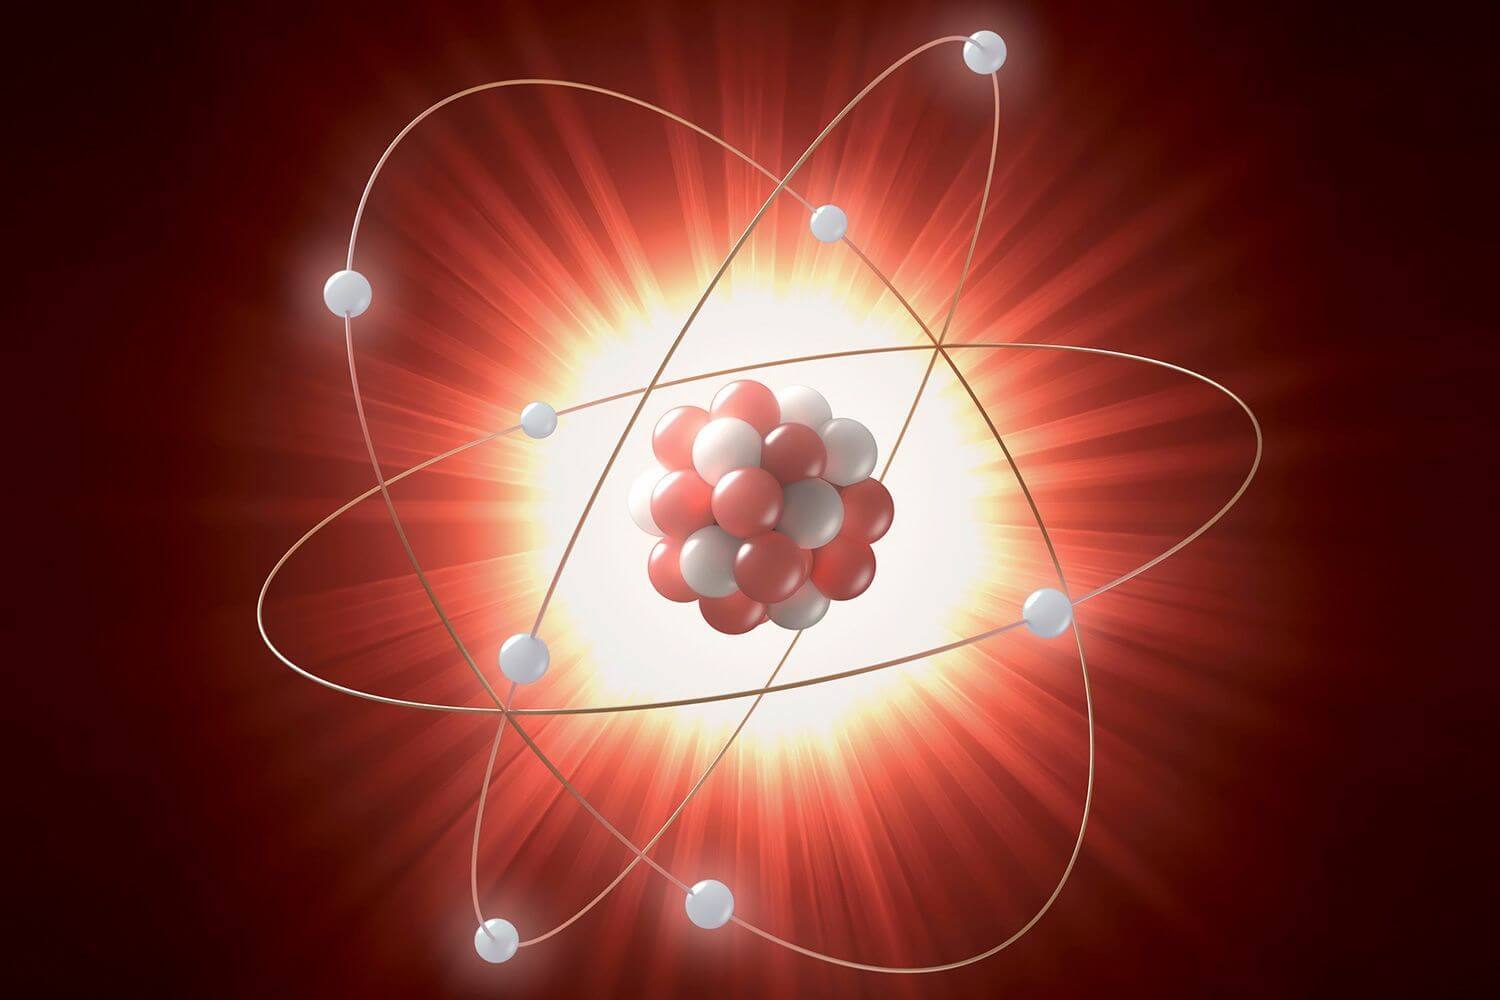 Pourquoi les scientifiques sont préoccupés par le problème de l'atome?